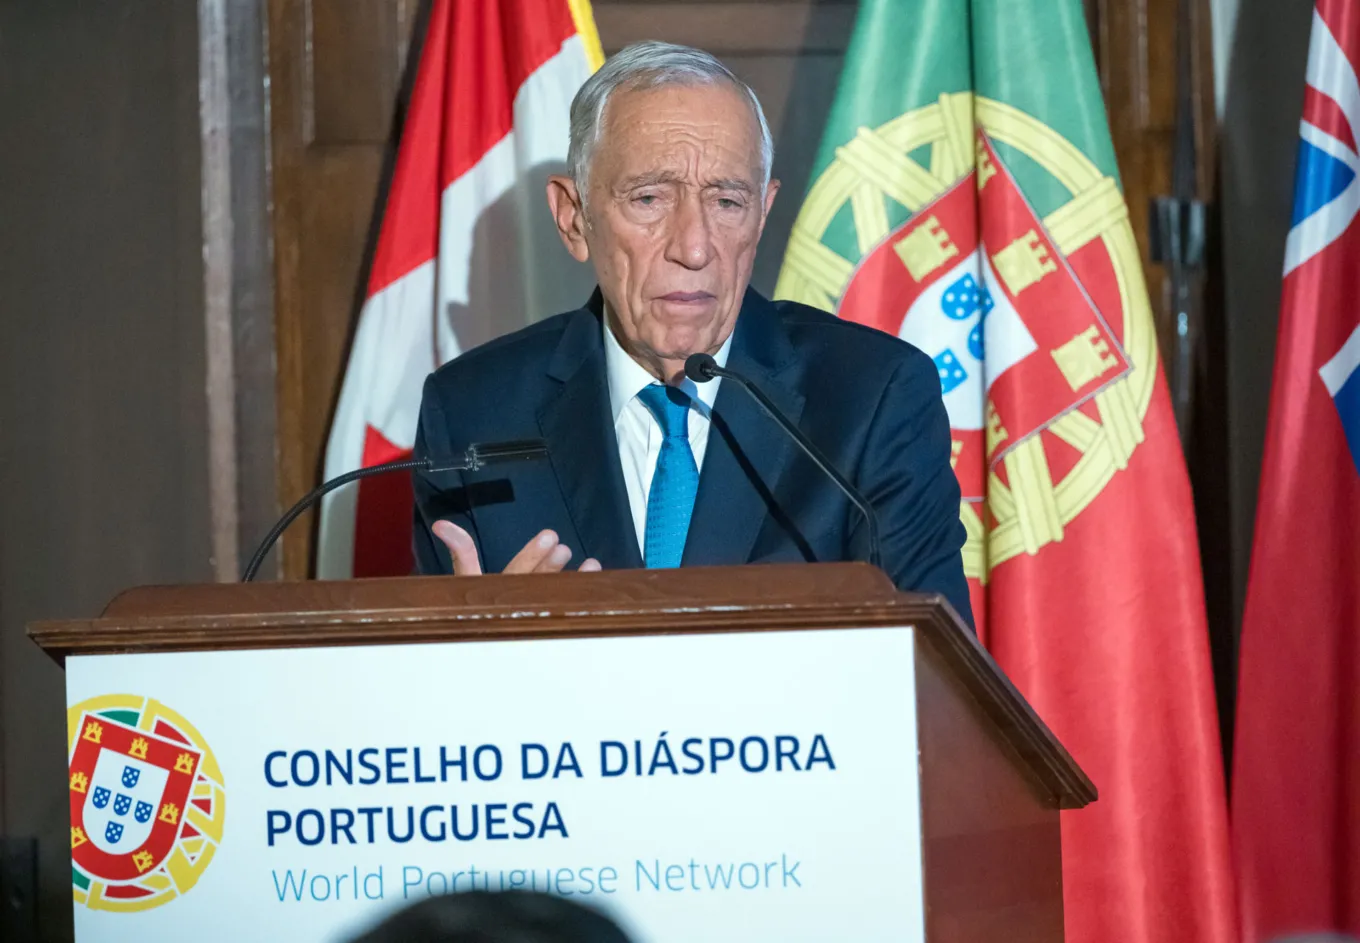 The Portuguese Republic, Marcelo Rebelo de Sousa